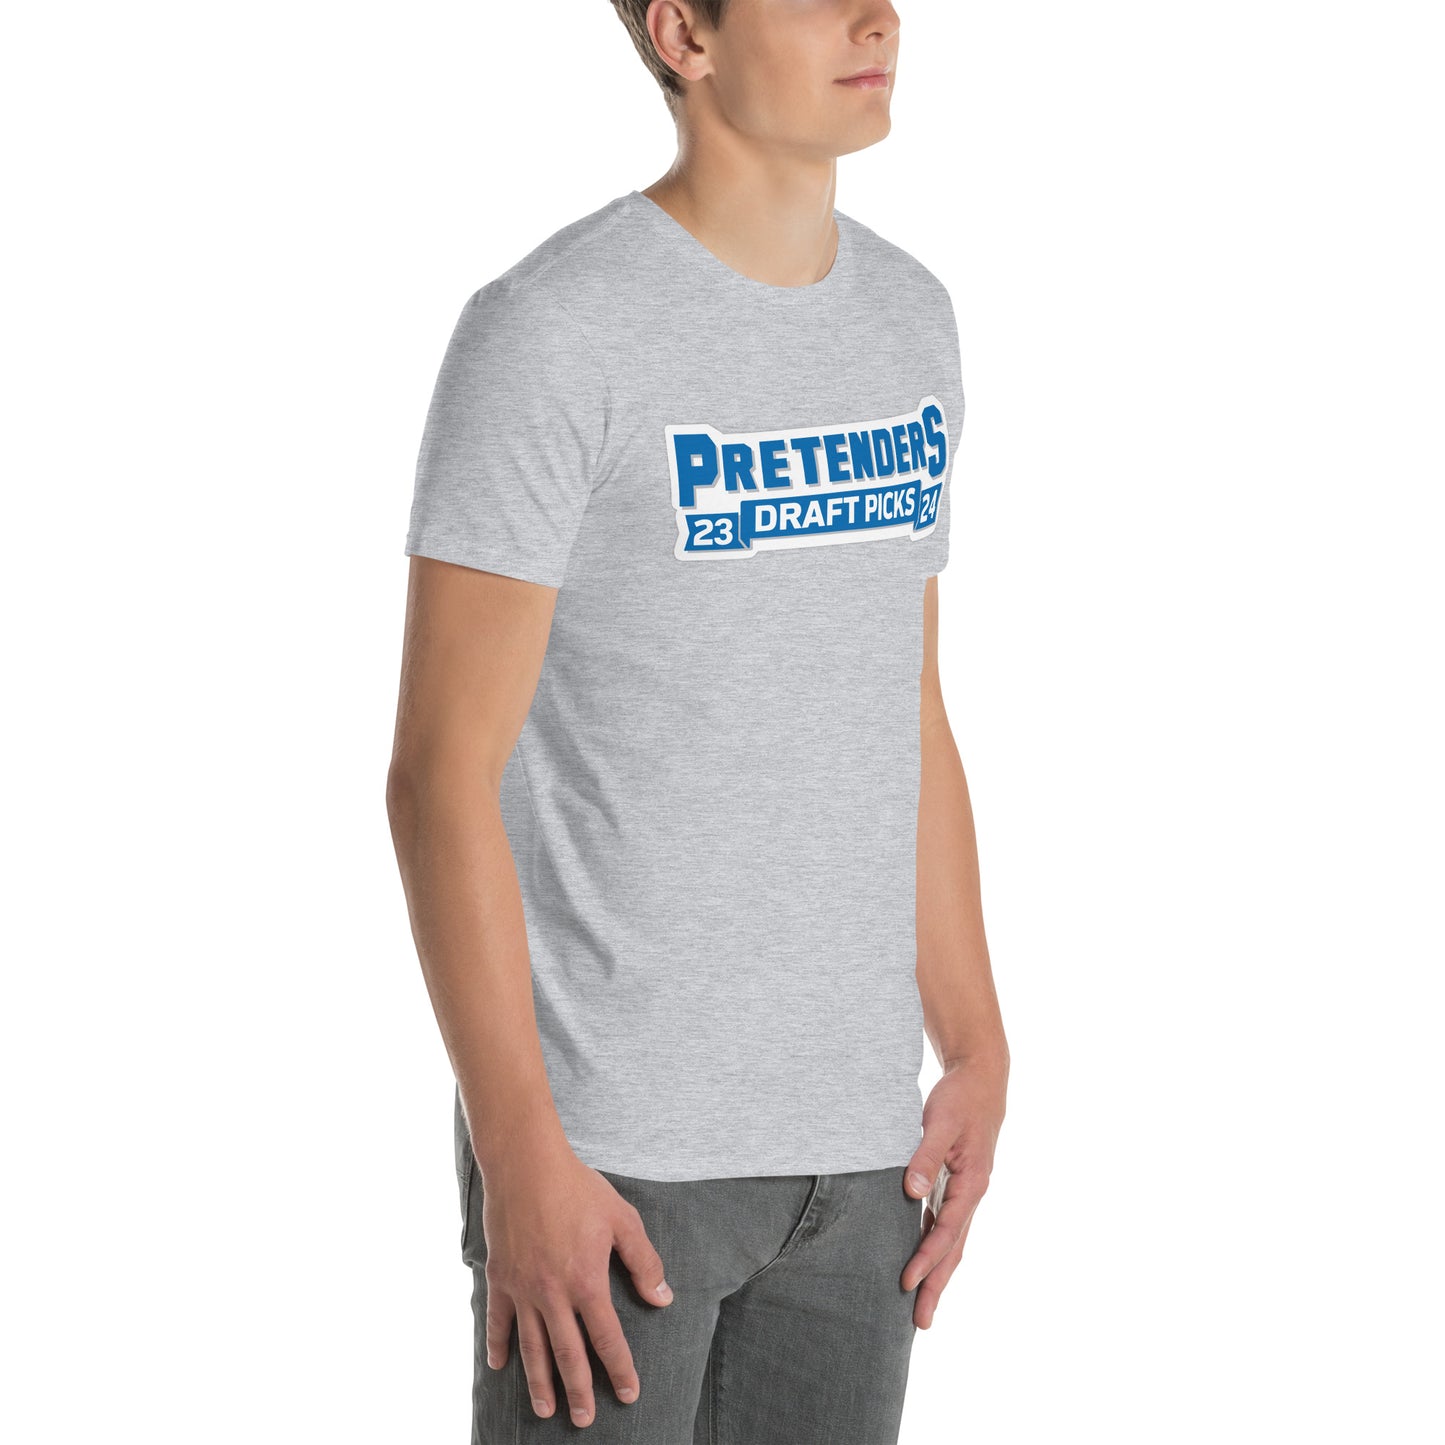 Pretenders Short-Sleeve Unisex T-Shirt